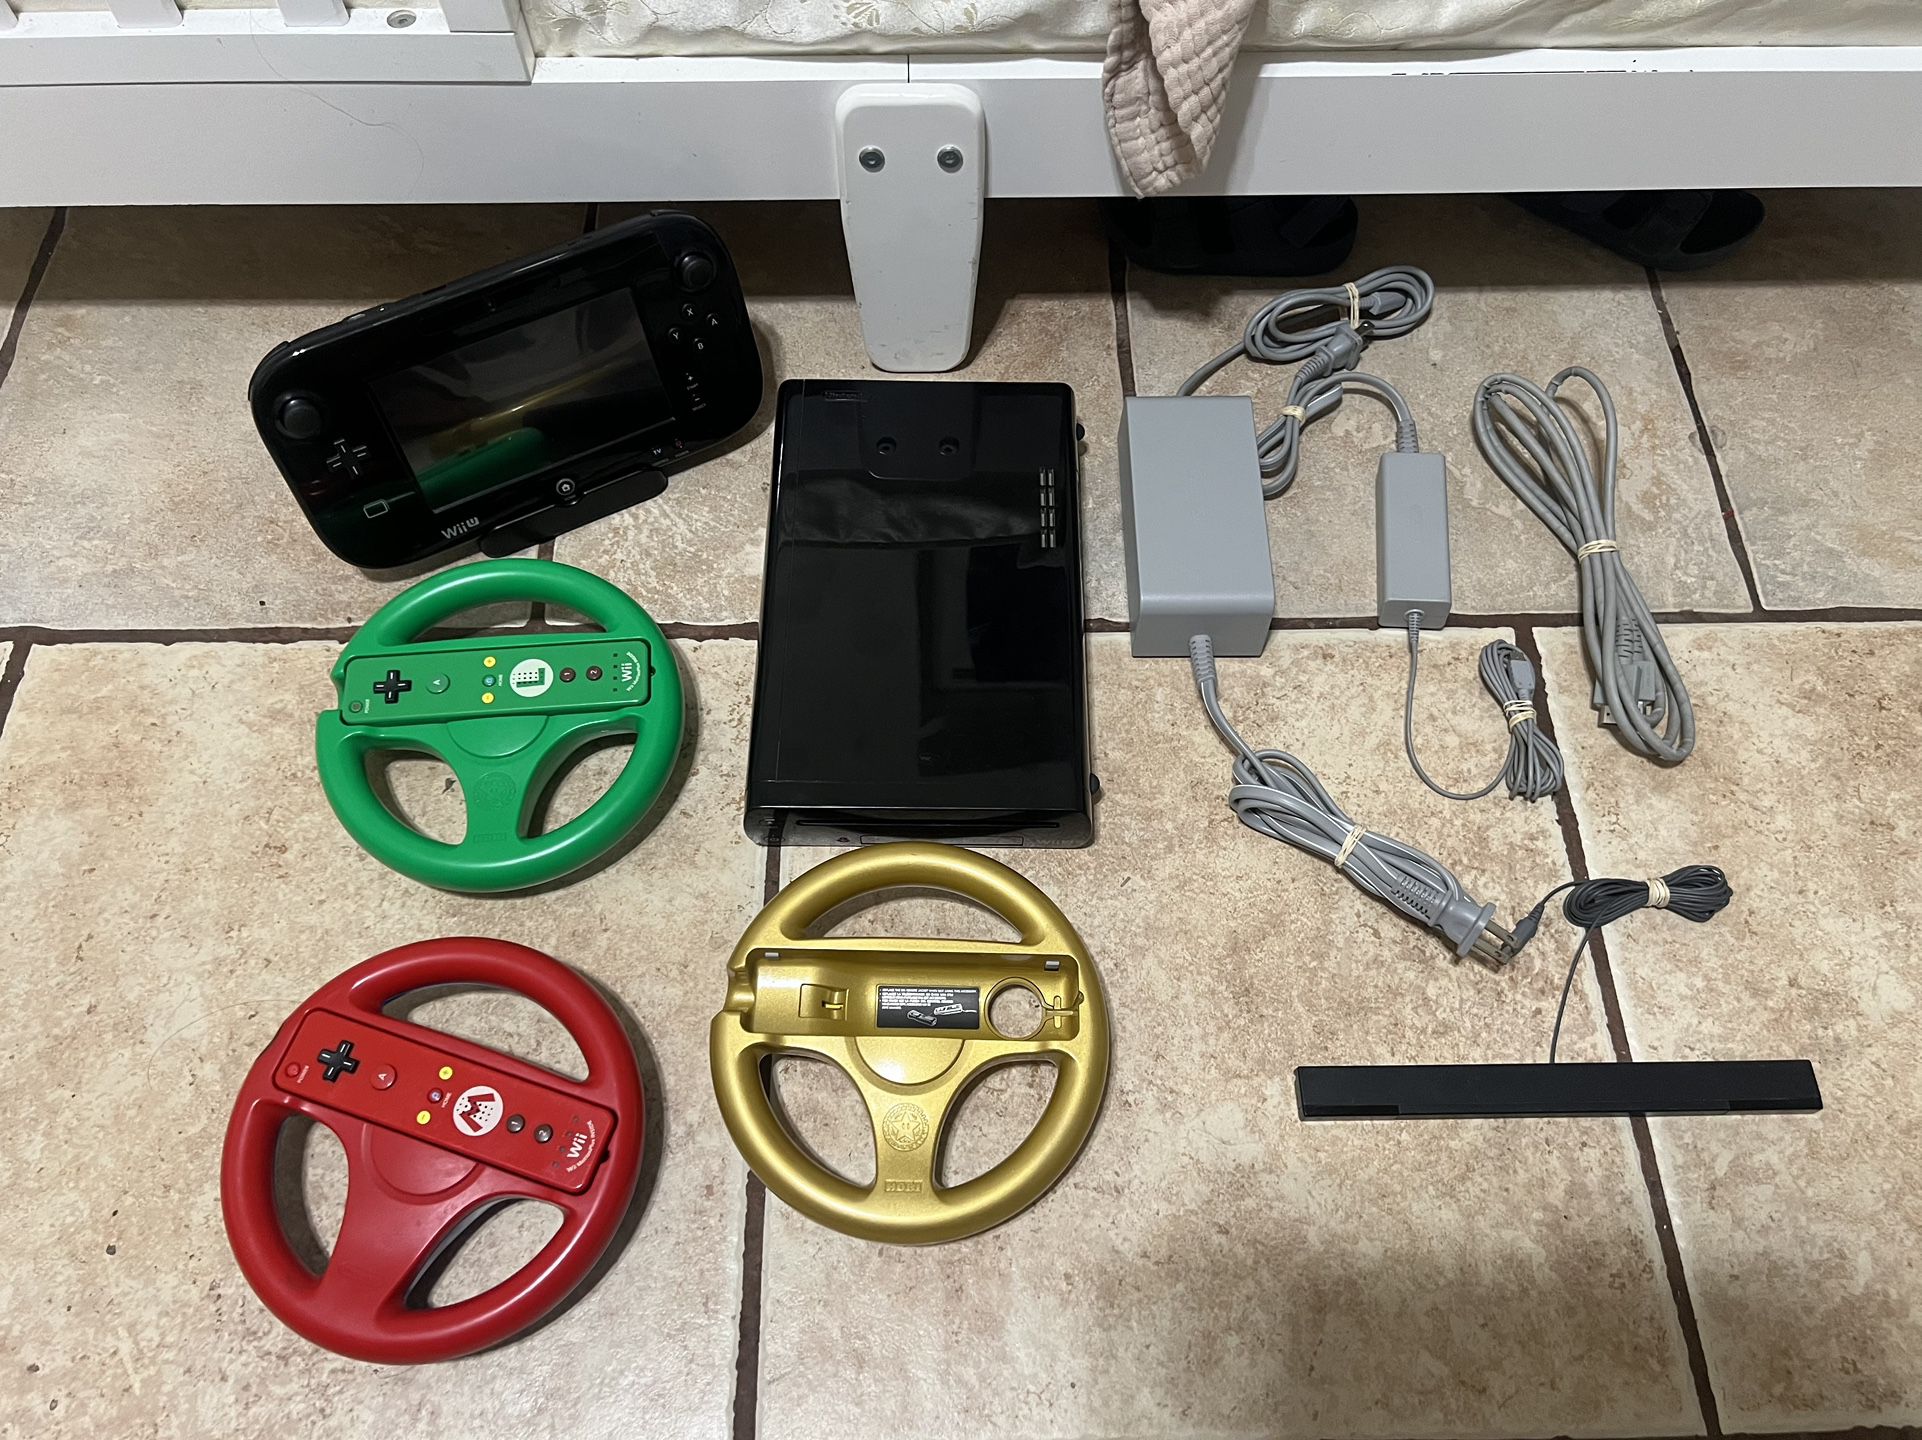 Wii U 32GB & Mario Kart Steering Wheel/Controllers 